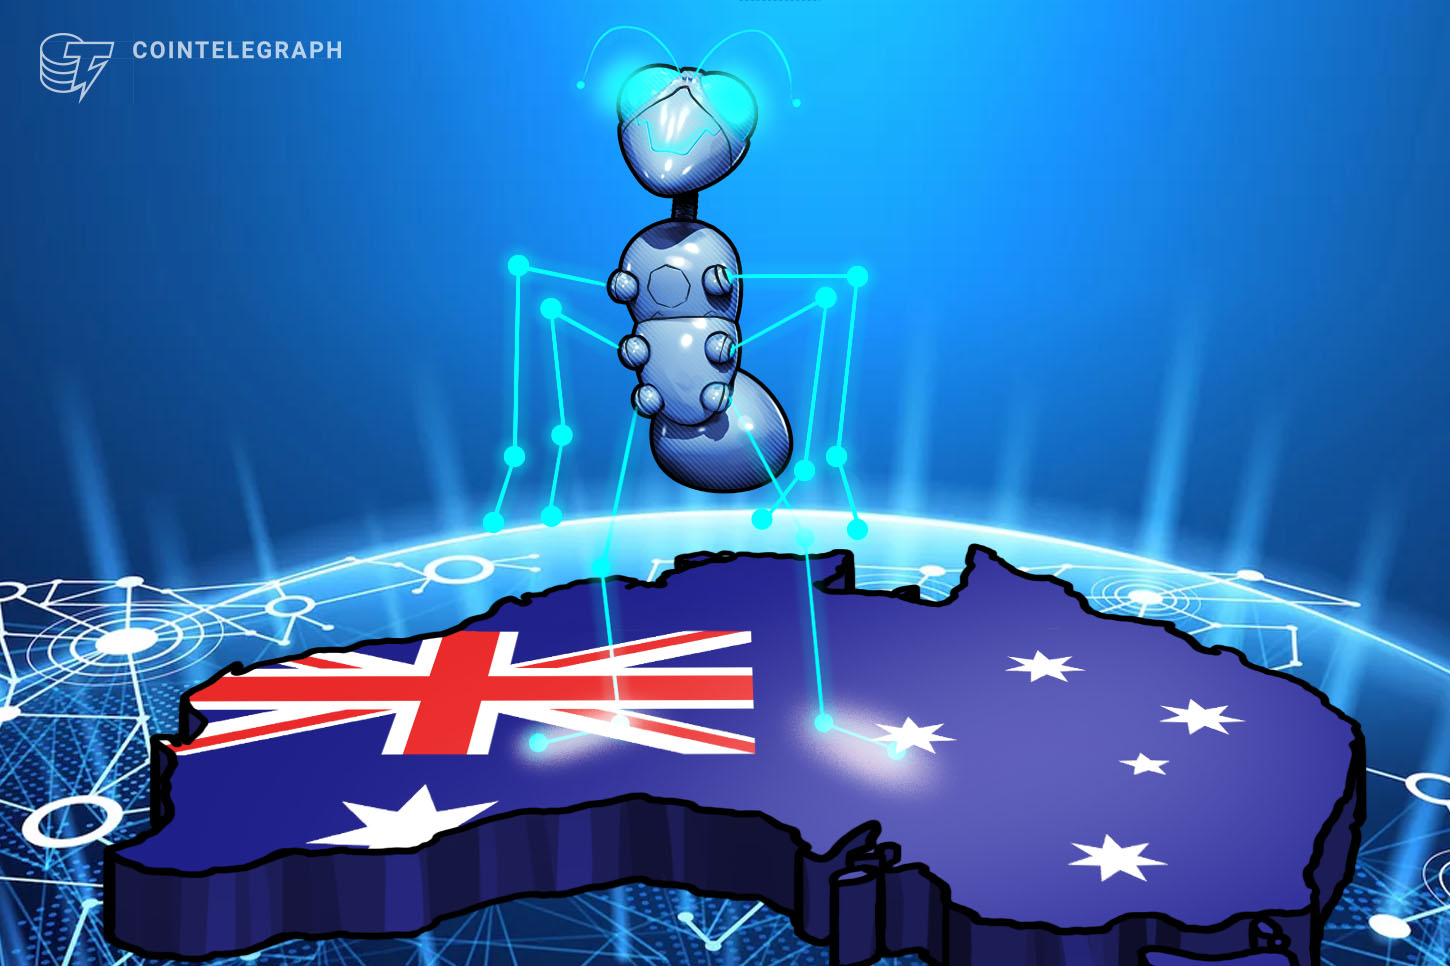 澳大利亚政府通过新的审判和公务员网络拥抱区块链